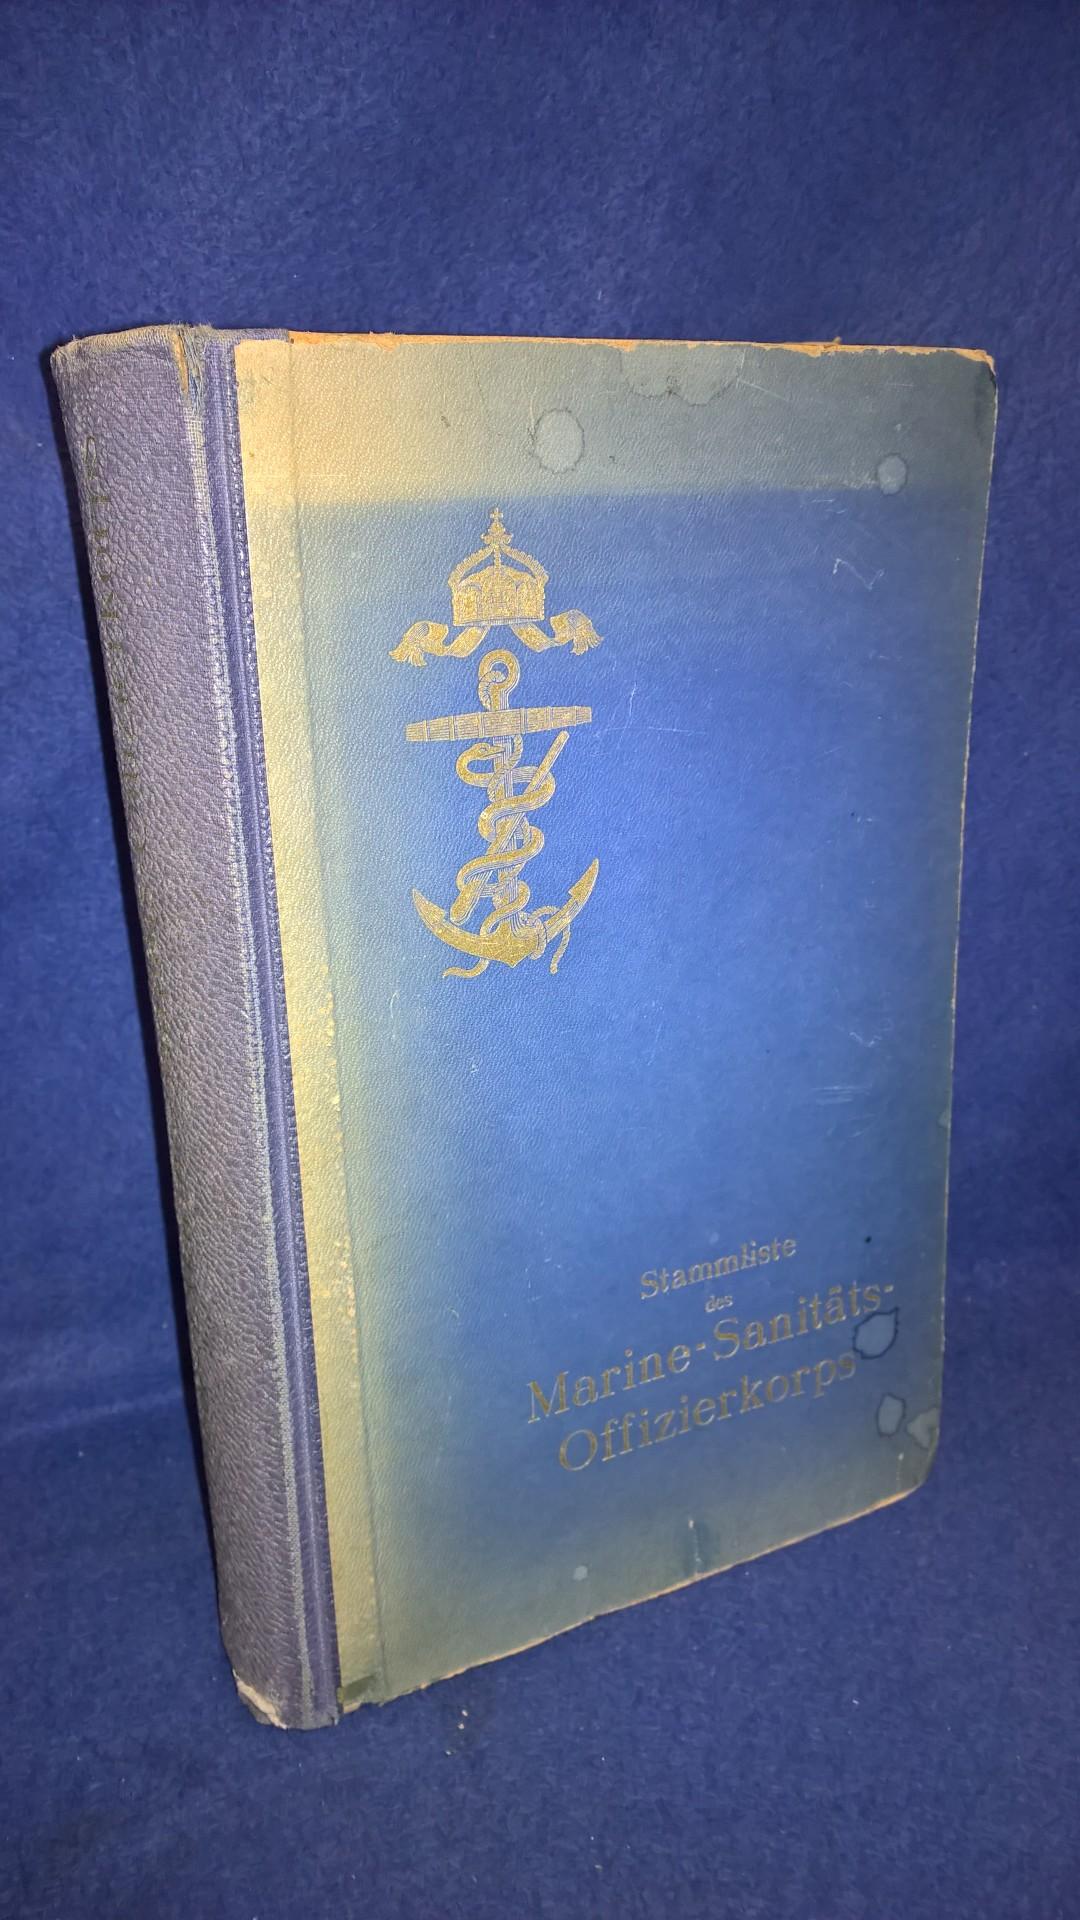 Stammliste des Marine-Sanitäts-Offizierkorps von 1848-1918. Seltene Rarität!